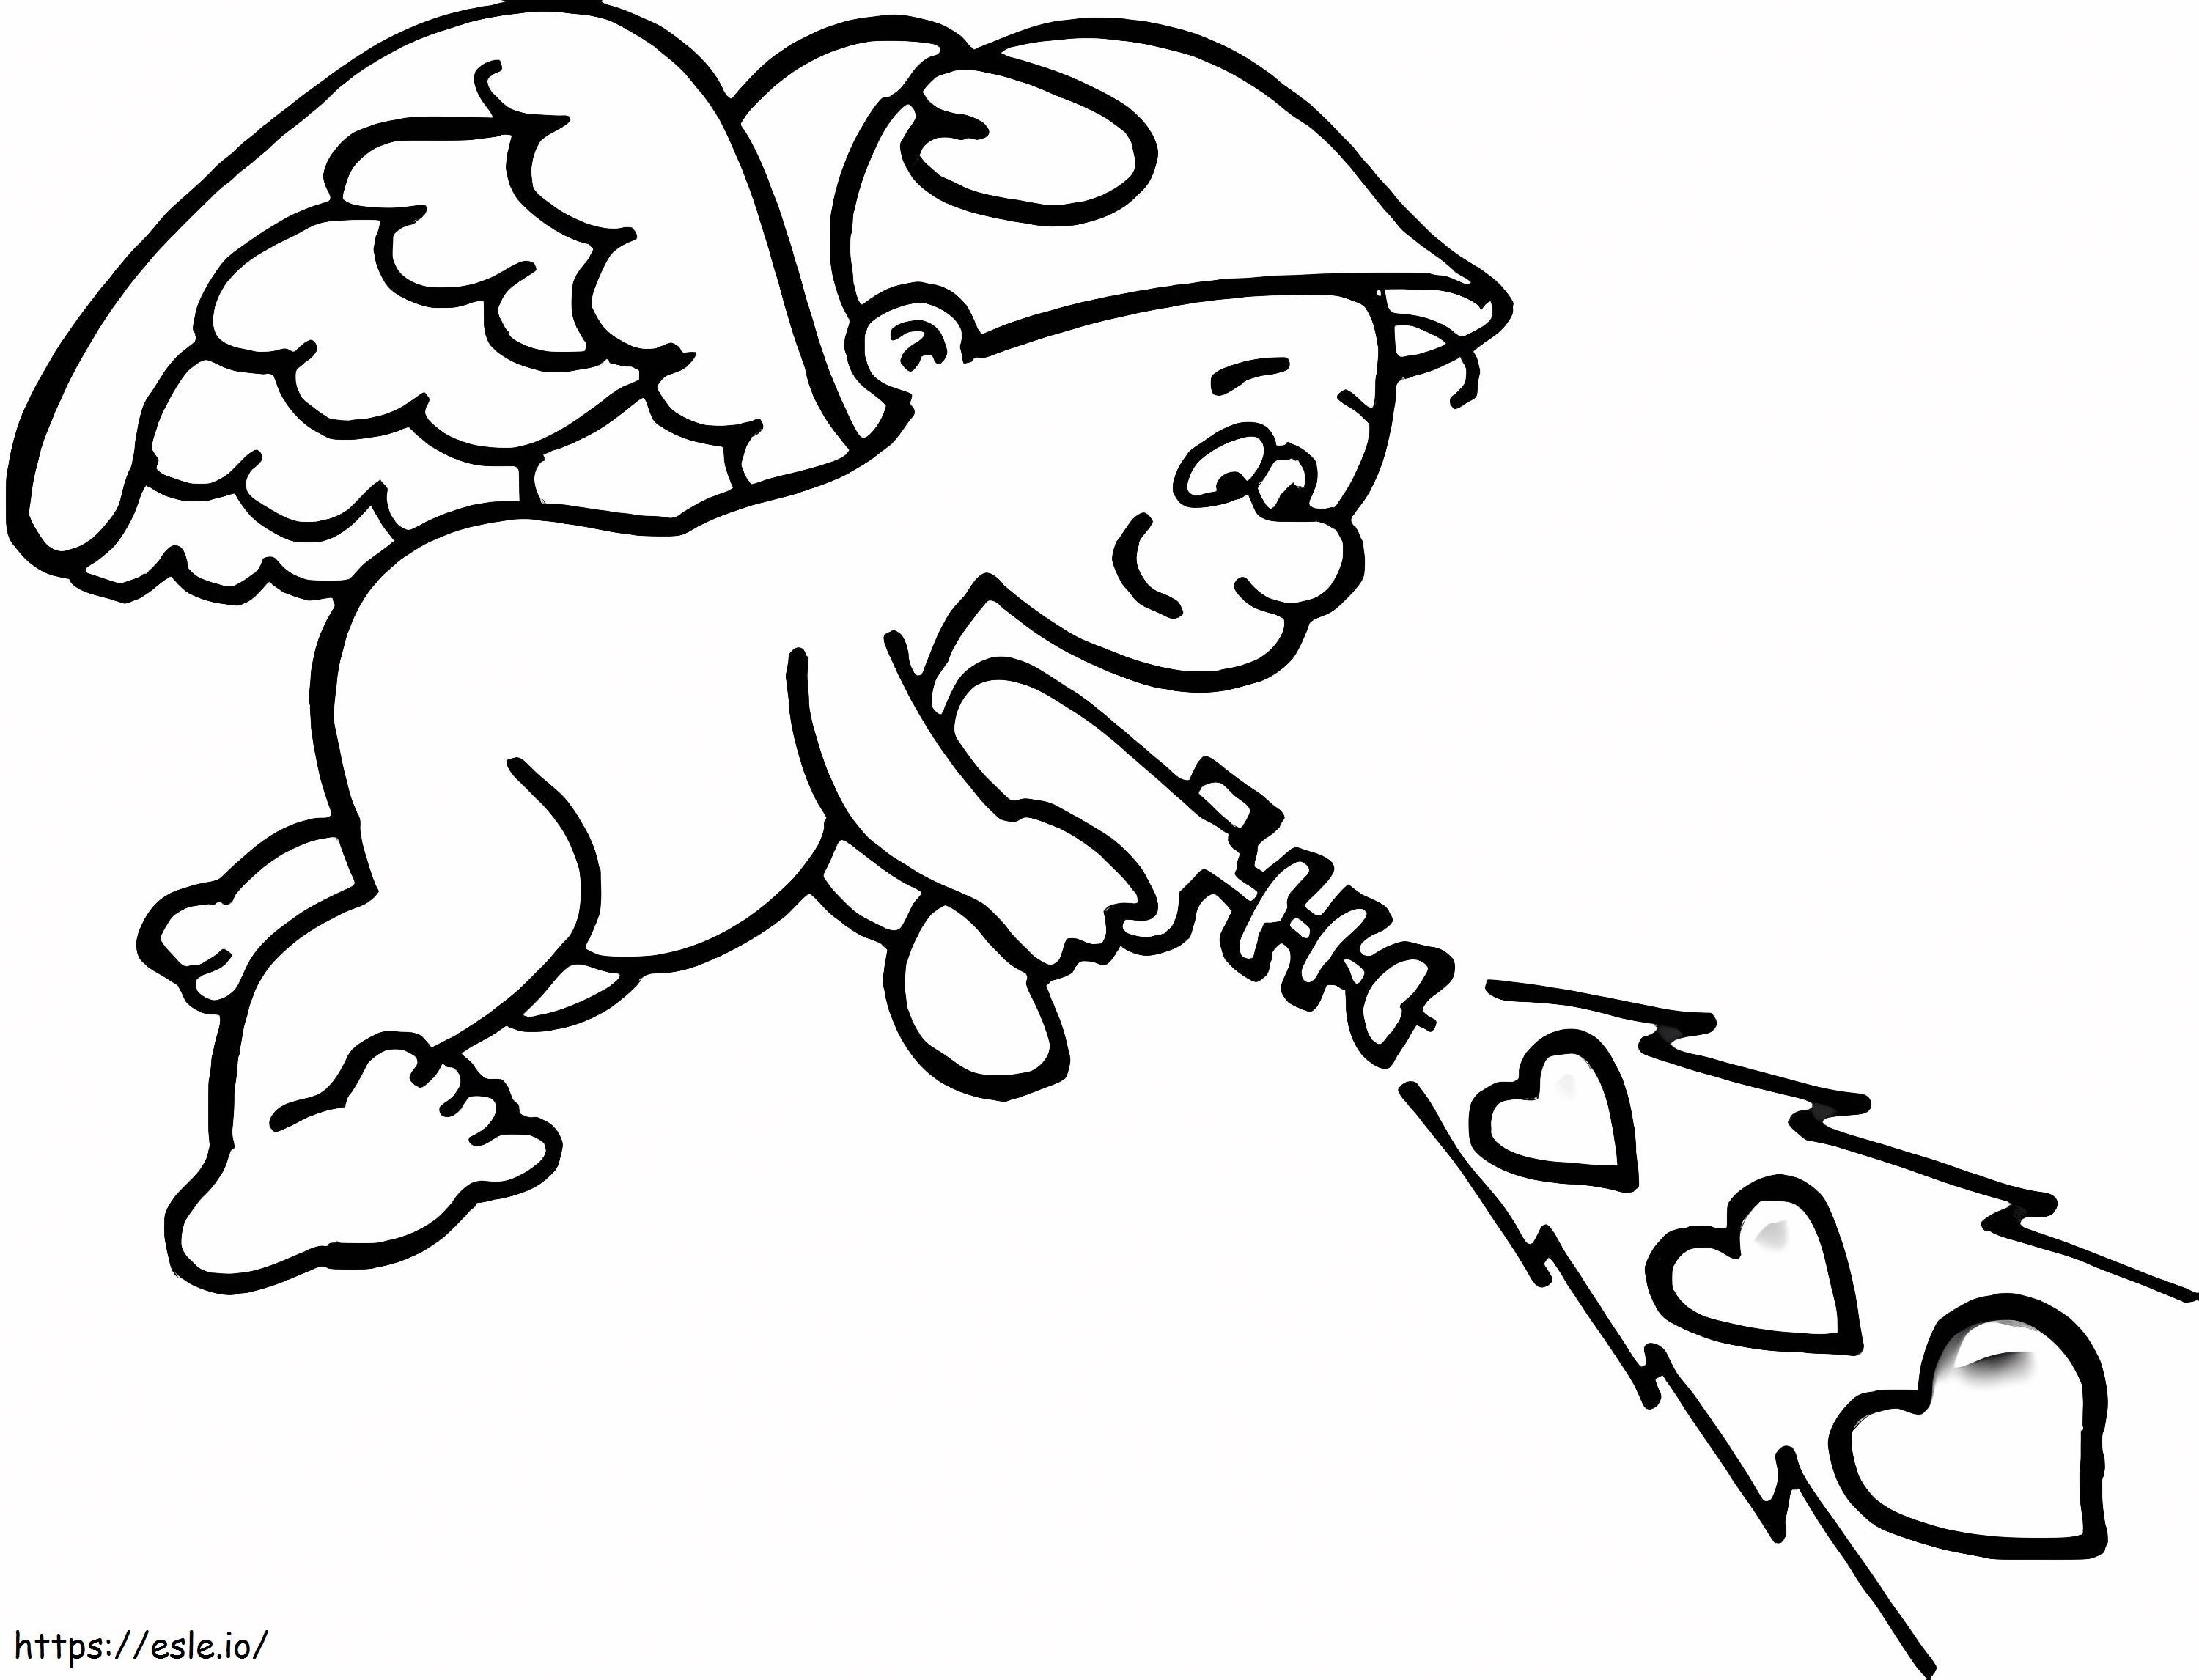 Cupid Brings Love coloring page